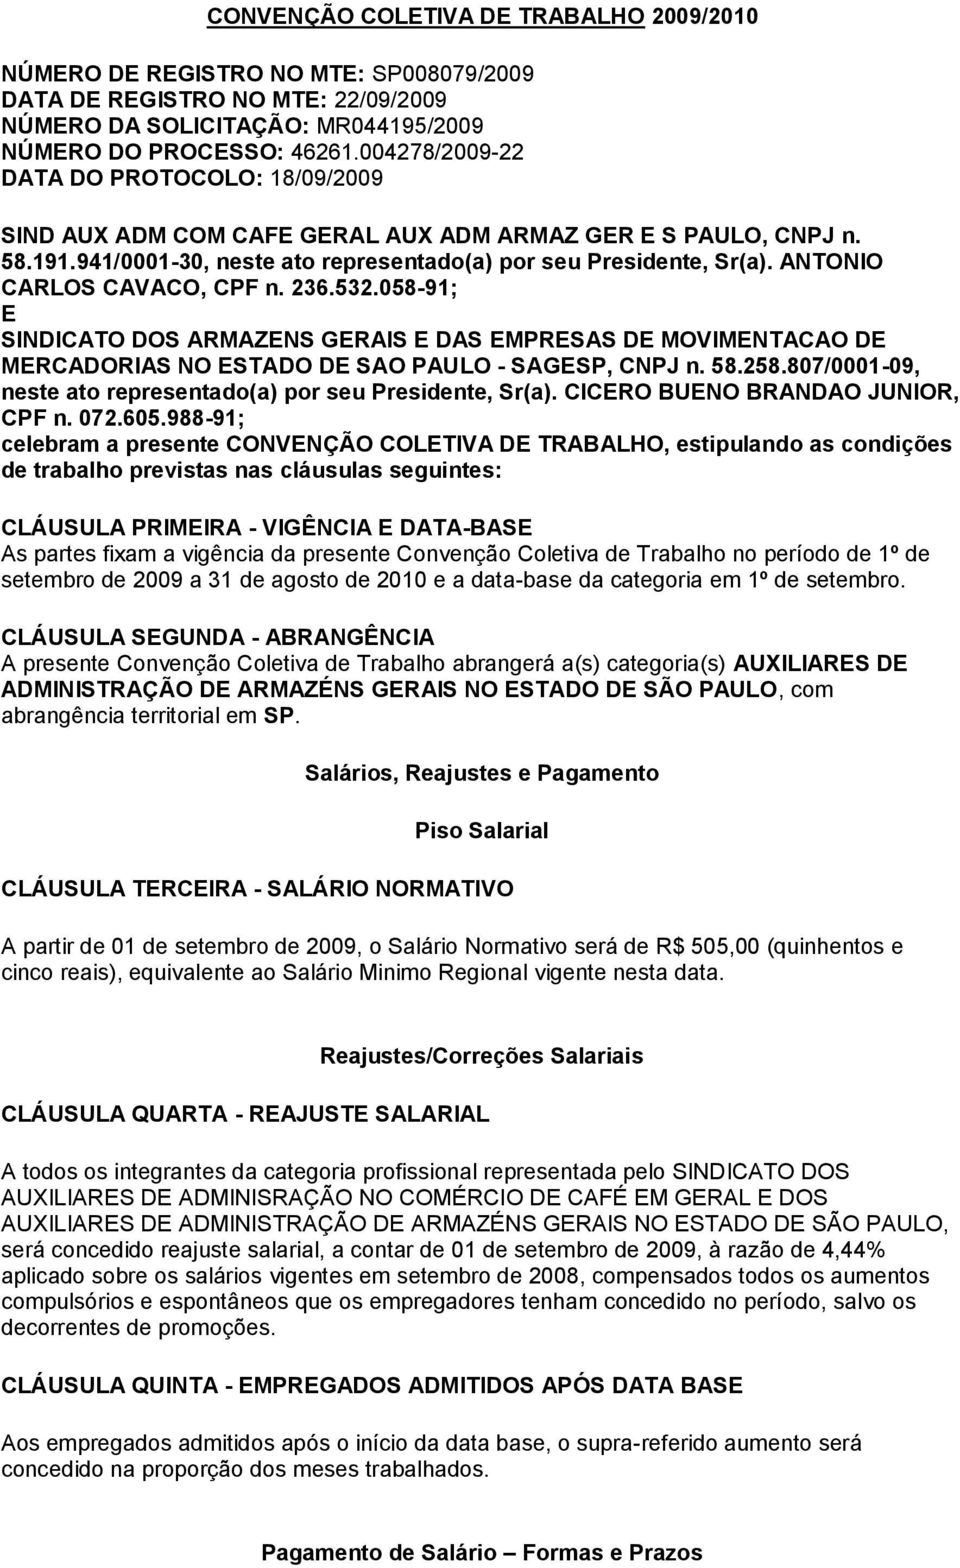 ANTONIO CARLOS CAVACO, CPF n. 236.532.058-91; E SINDICATO DOS ARMAZENS GERAIS E DAS EMPRESAS DE MOVIMENTACAO DE MERCADORIAS NO ESTADO DE SAO PAULO - SAGESP, CNPJ n. 58.258.